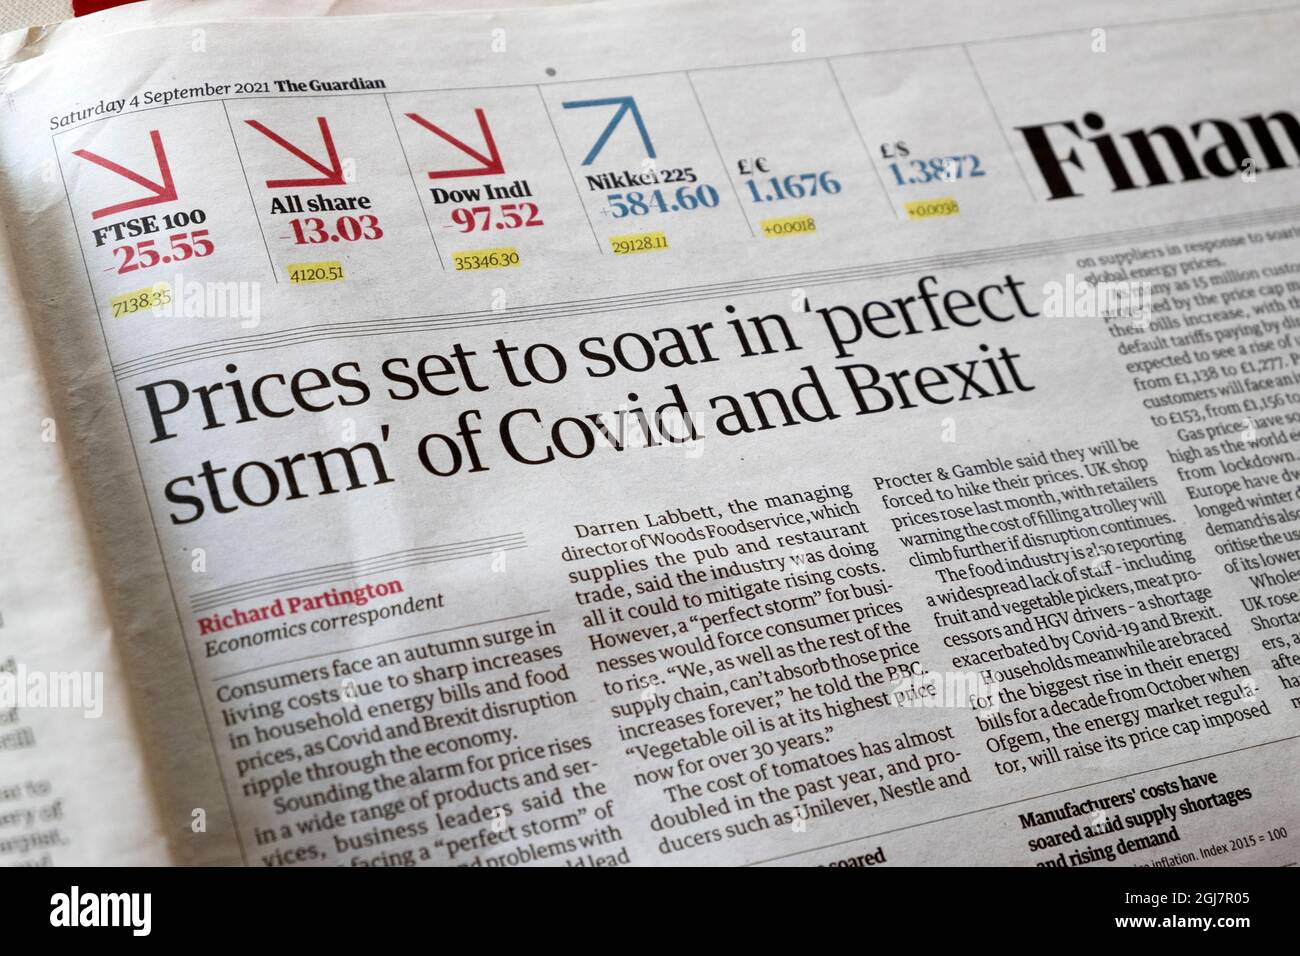 Guardian Financial Inside page titre du journal "les prix vont monter en flèche dans la "tempête parfaite" de Covid et Brexit" le 4 septembre 2021 Londres Angleterre Royaume-Uni Banque D'Images